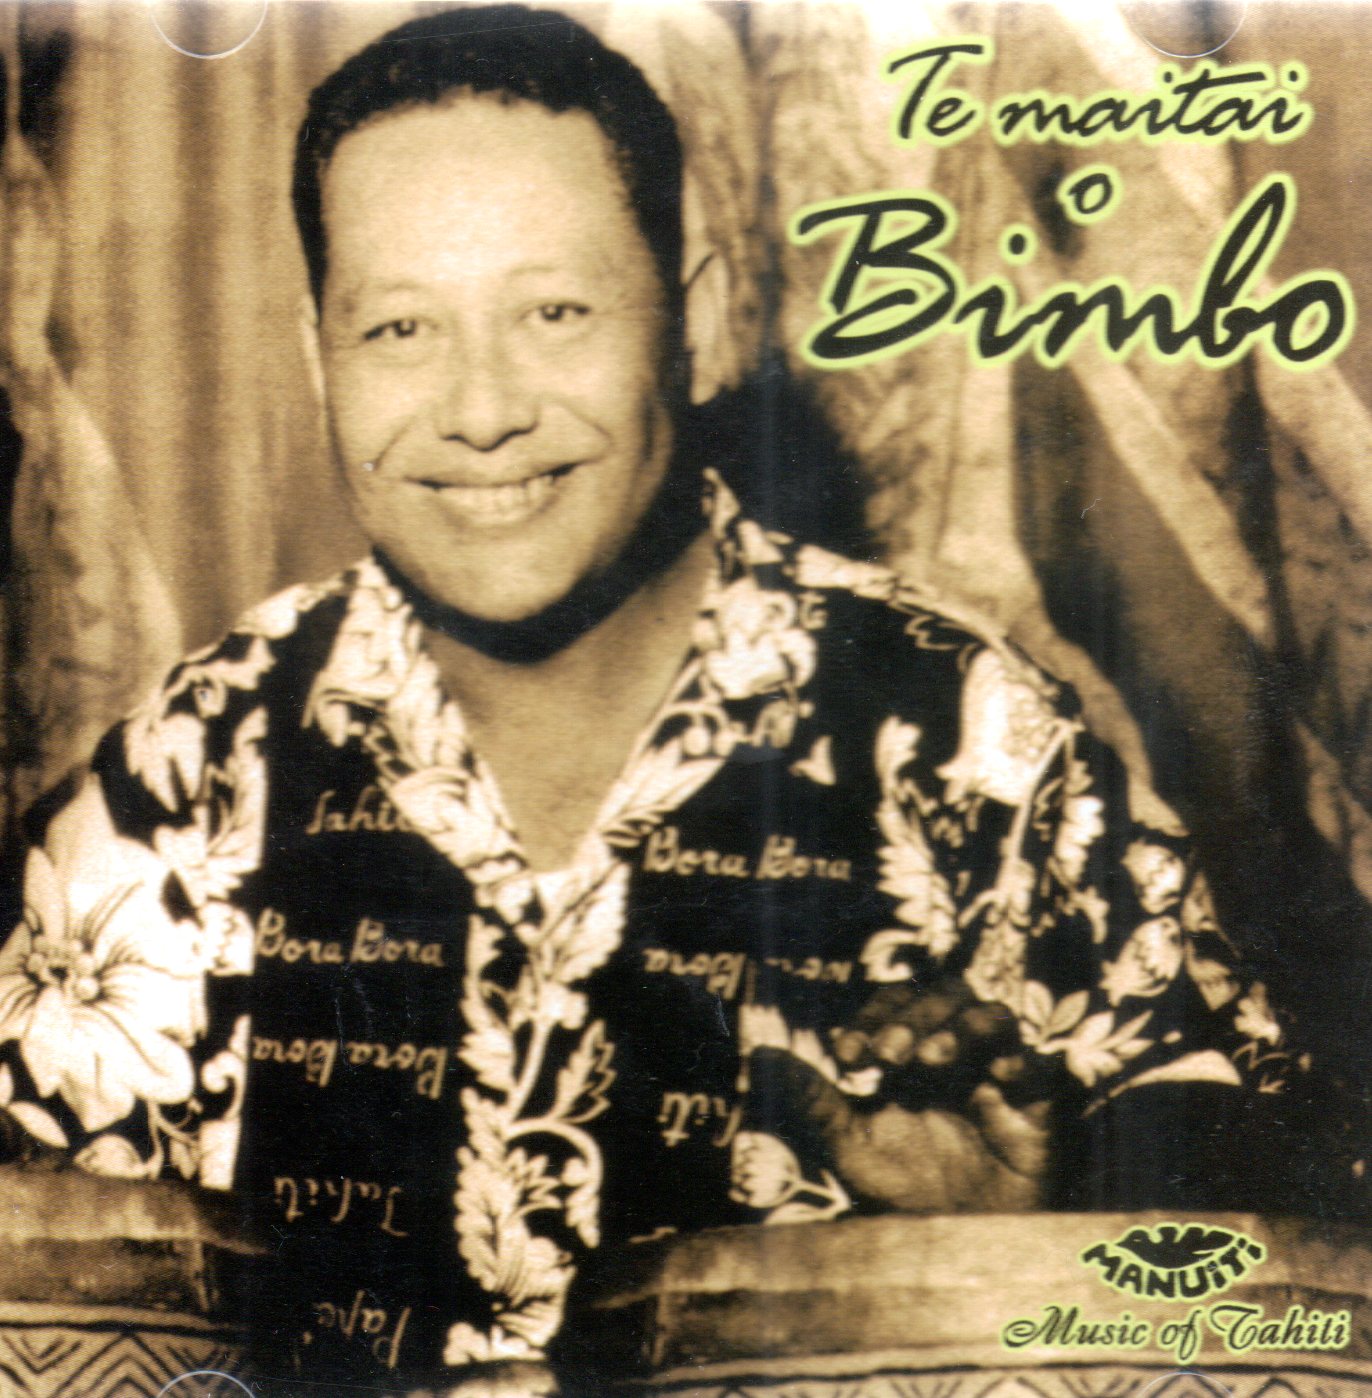 Musique : Il y a trente ans disparaissait Bimbo, l'inoubliable Bimbo